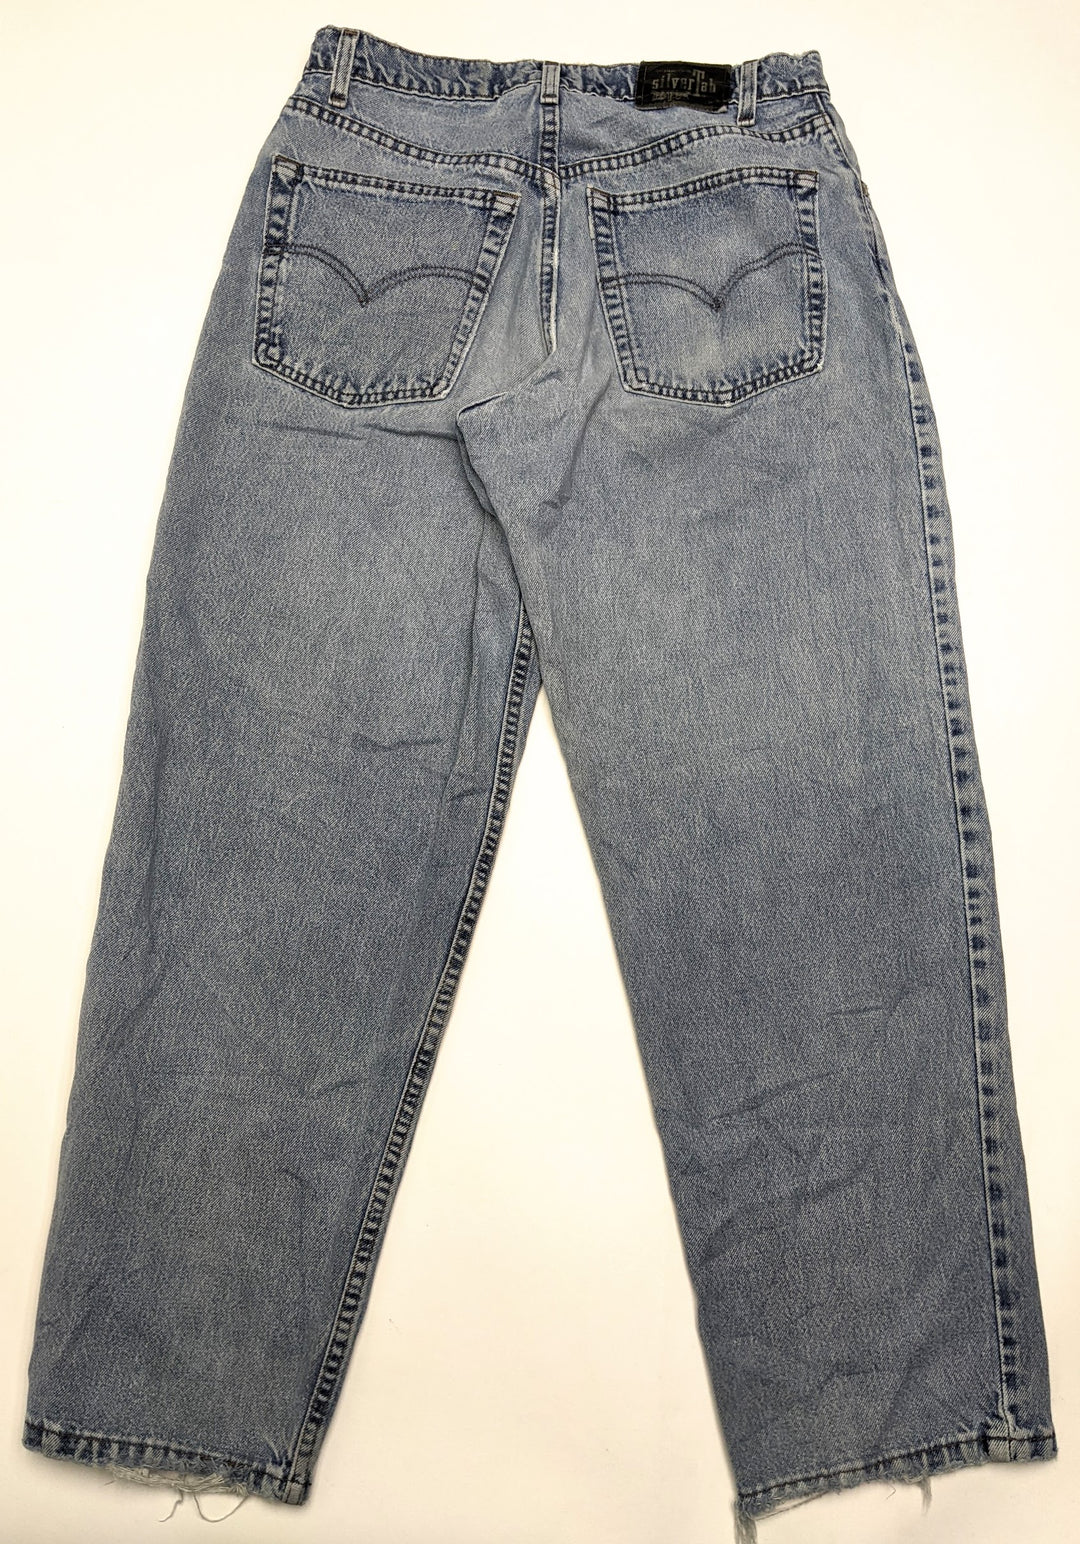 Silvertab Jeans 1 pc 1 lb C0207205 - Raghouse